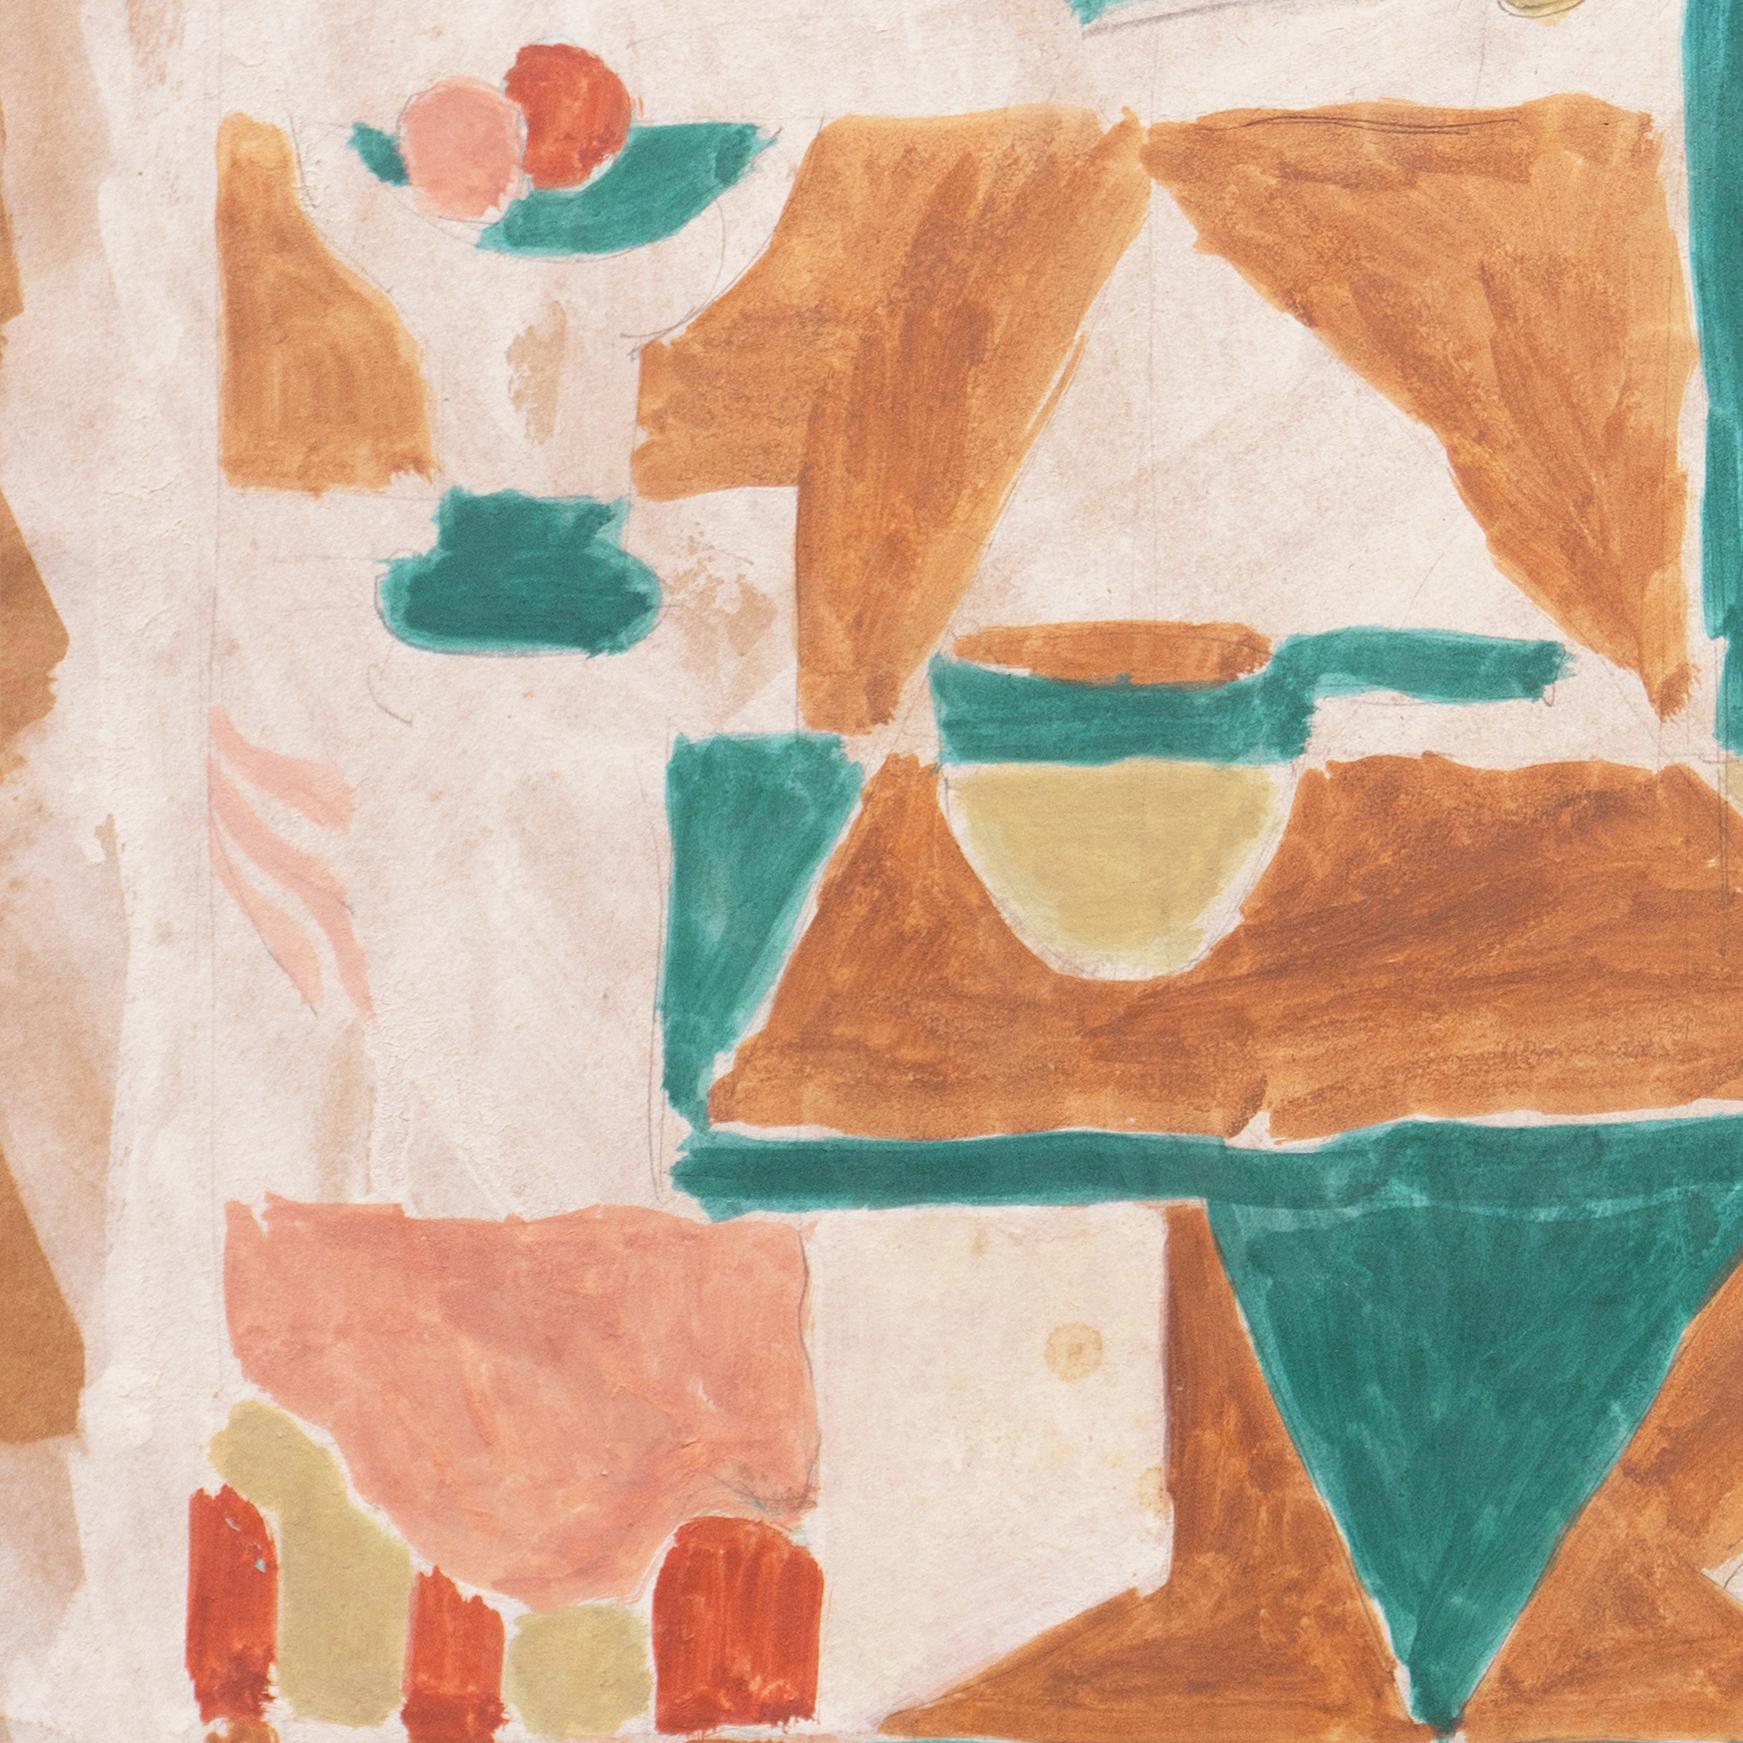 Um 1955 von Victor Di Gesu (Amerikaner, 1914-1988) geschaffen und verso mit einem Echtheitszertifikat versehen. 

Ein kubistisch abgeleitetes Stillleben in einem Interieur, das Obst in einer Schale auf einem Tisch mit verschiedenen